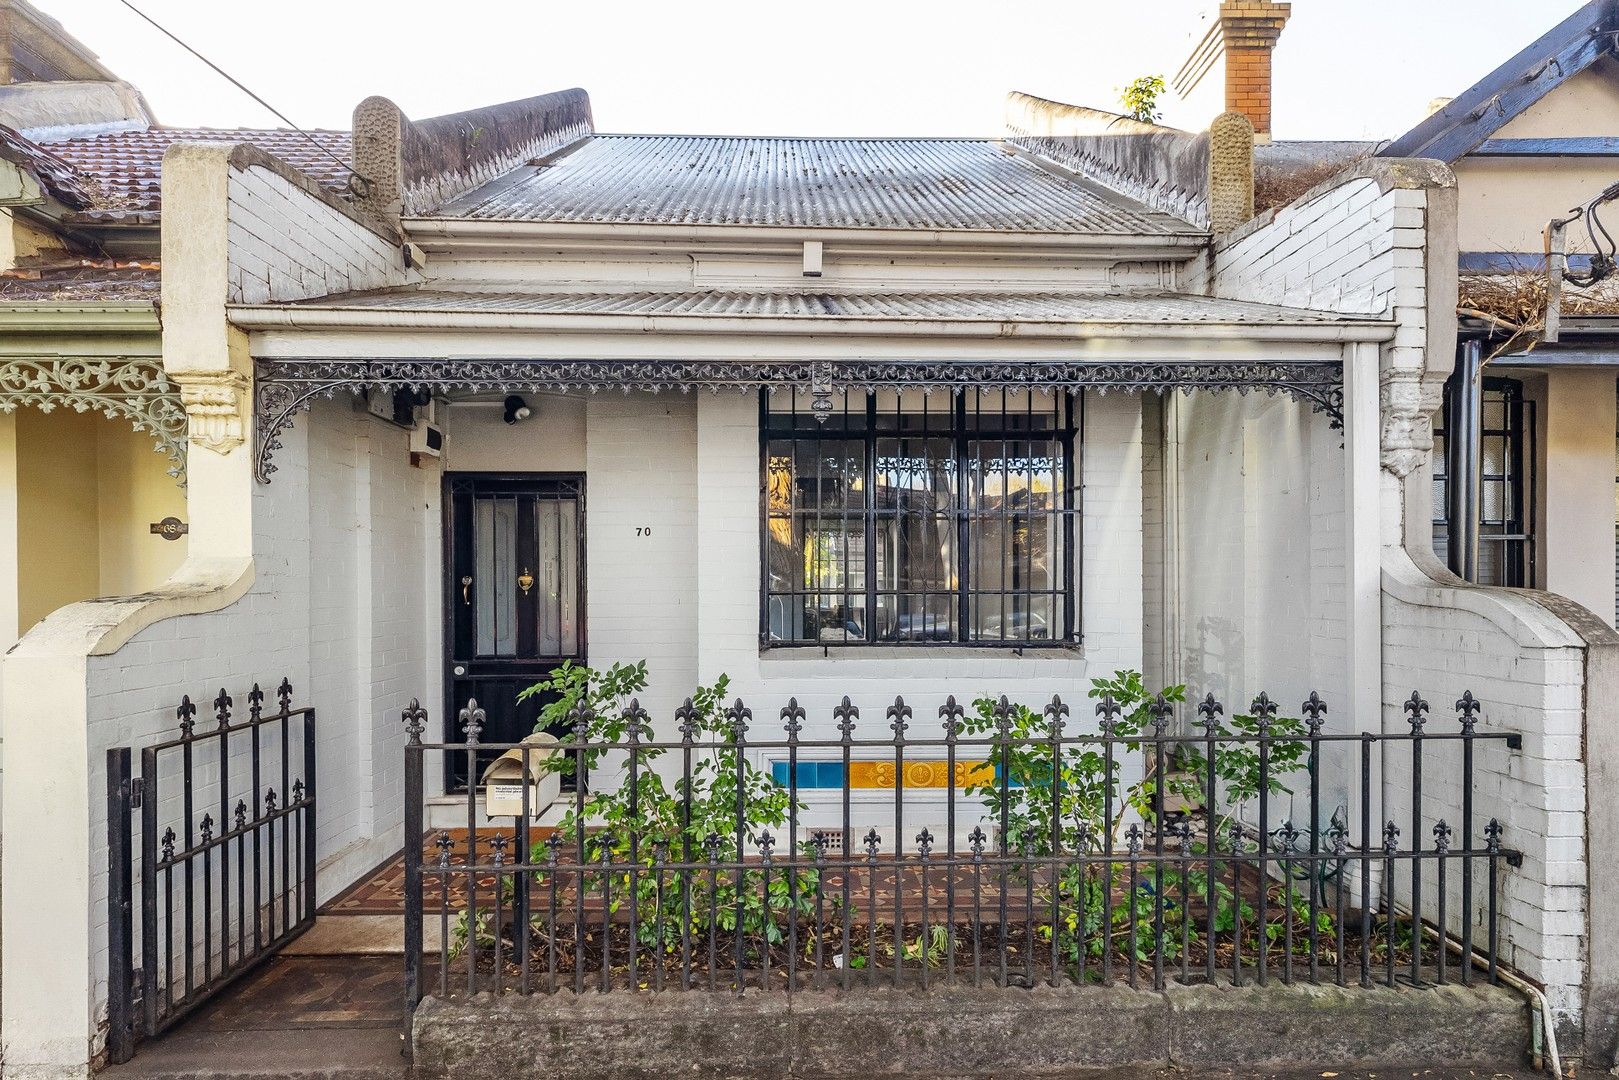 2 bedrooms House in 70 Kepos Street REDFERN NSW, 2016